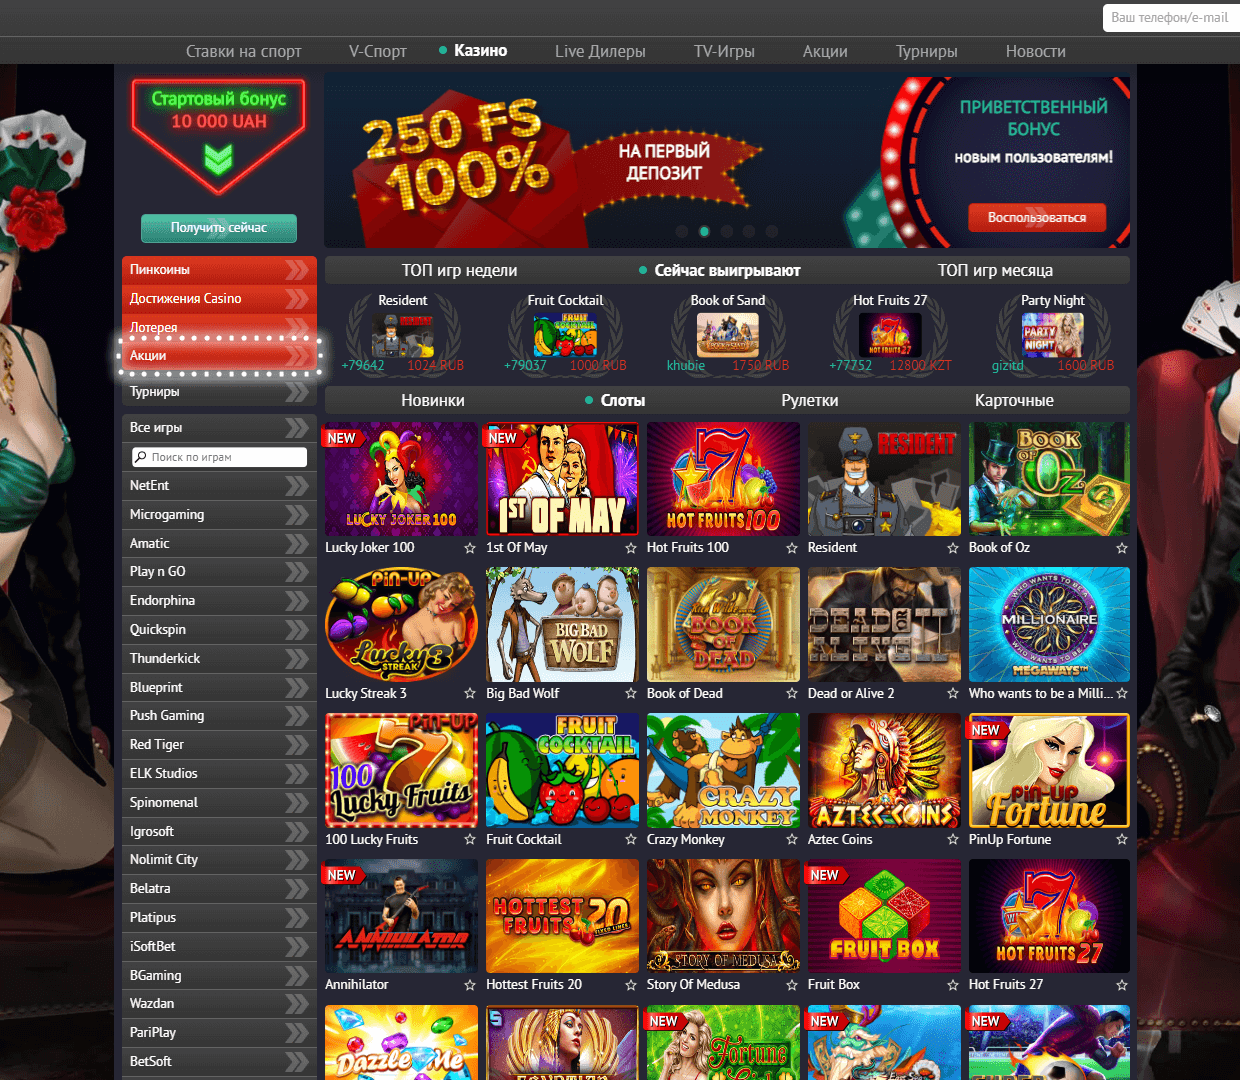 Казино пин ап 🔥 (pin up): играть на официальном сайте онлайн казино, скачать игровые автоматы